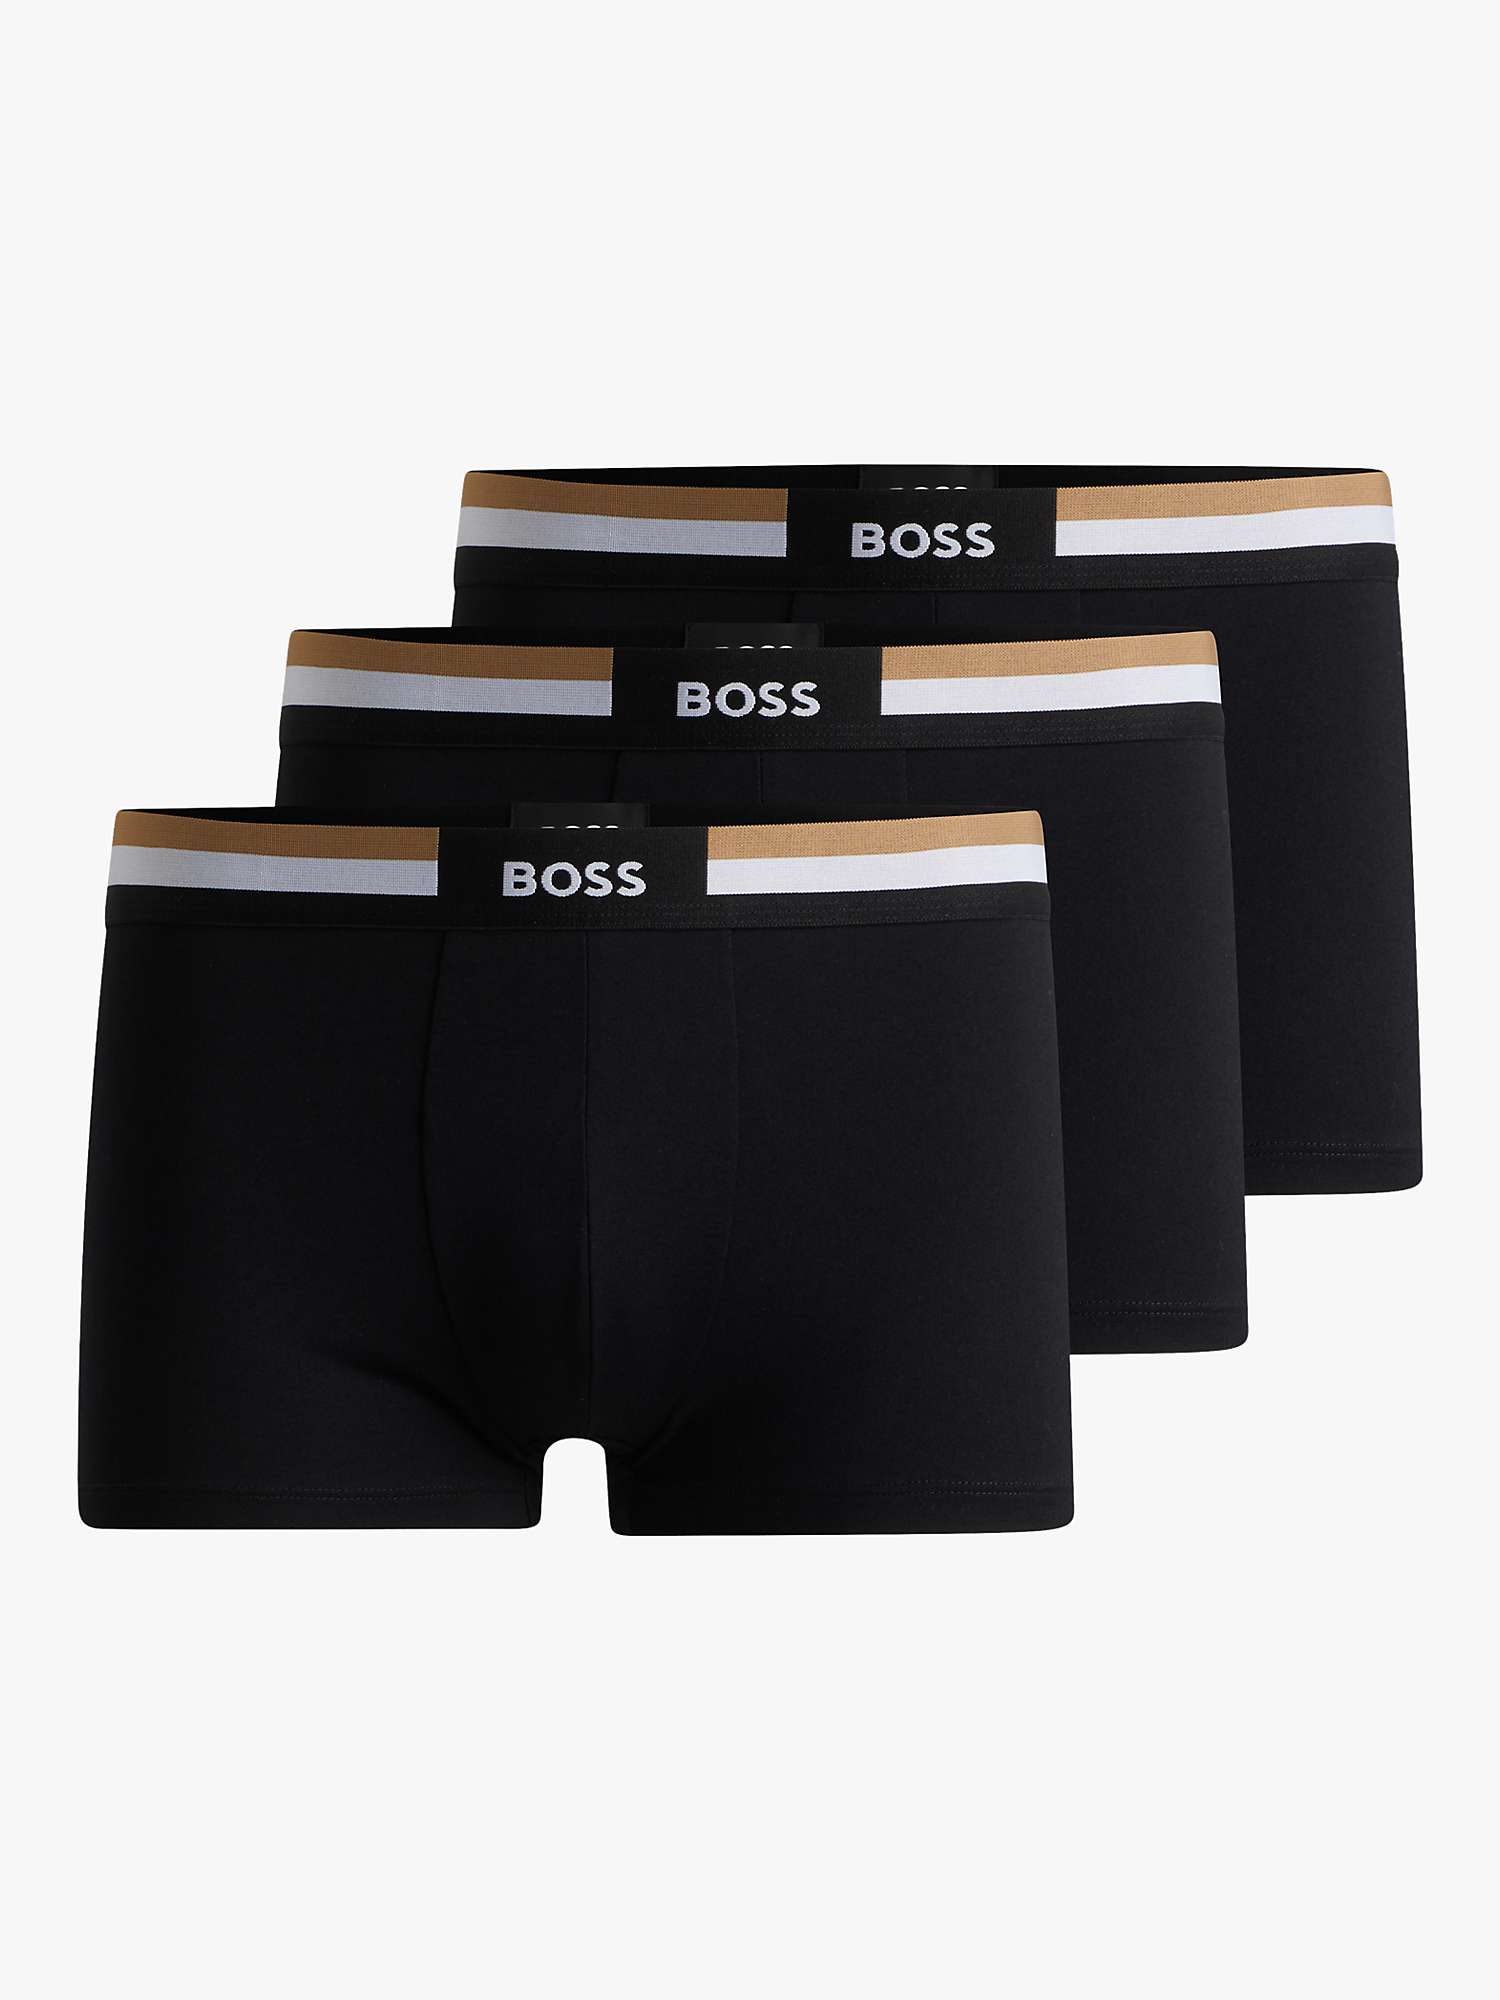 Buy BOSS Motion Trunks, Pack of 3, Black Online at johnlewis.com